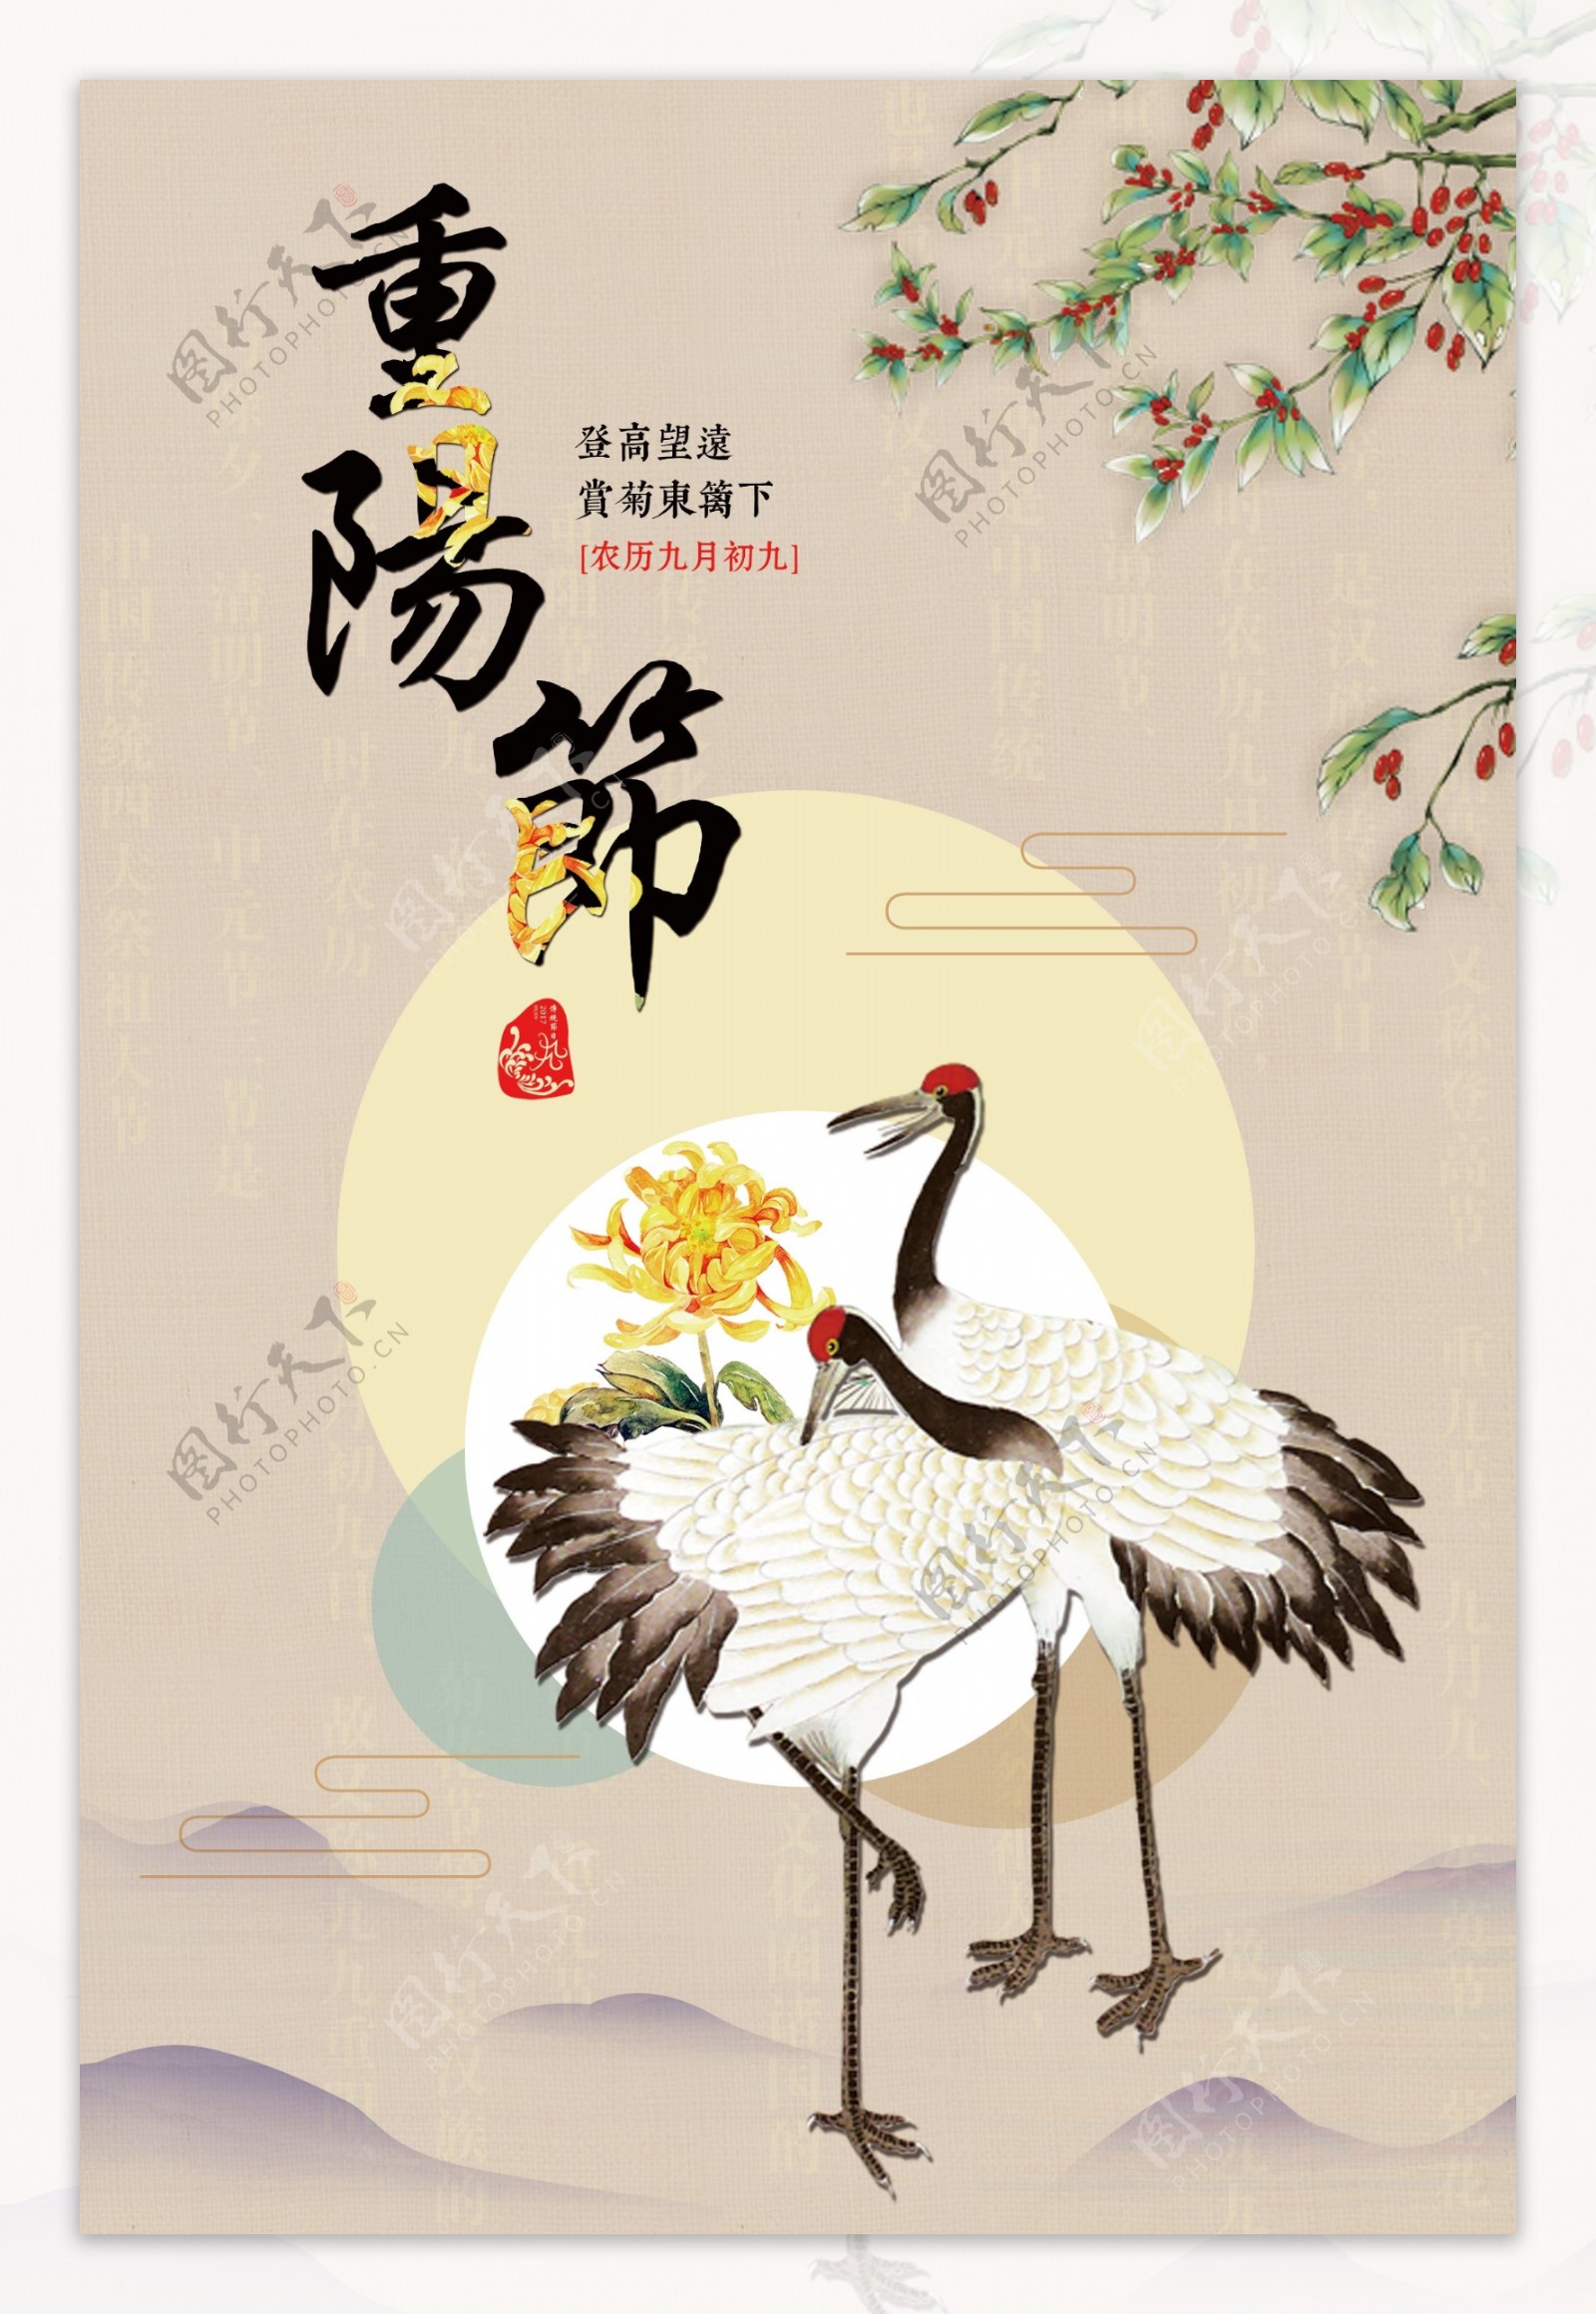 重阳节文化宣传海报